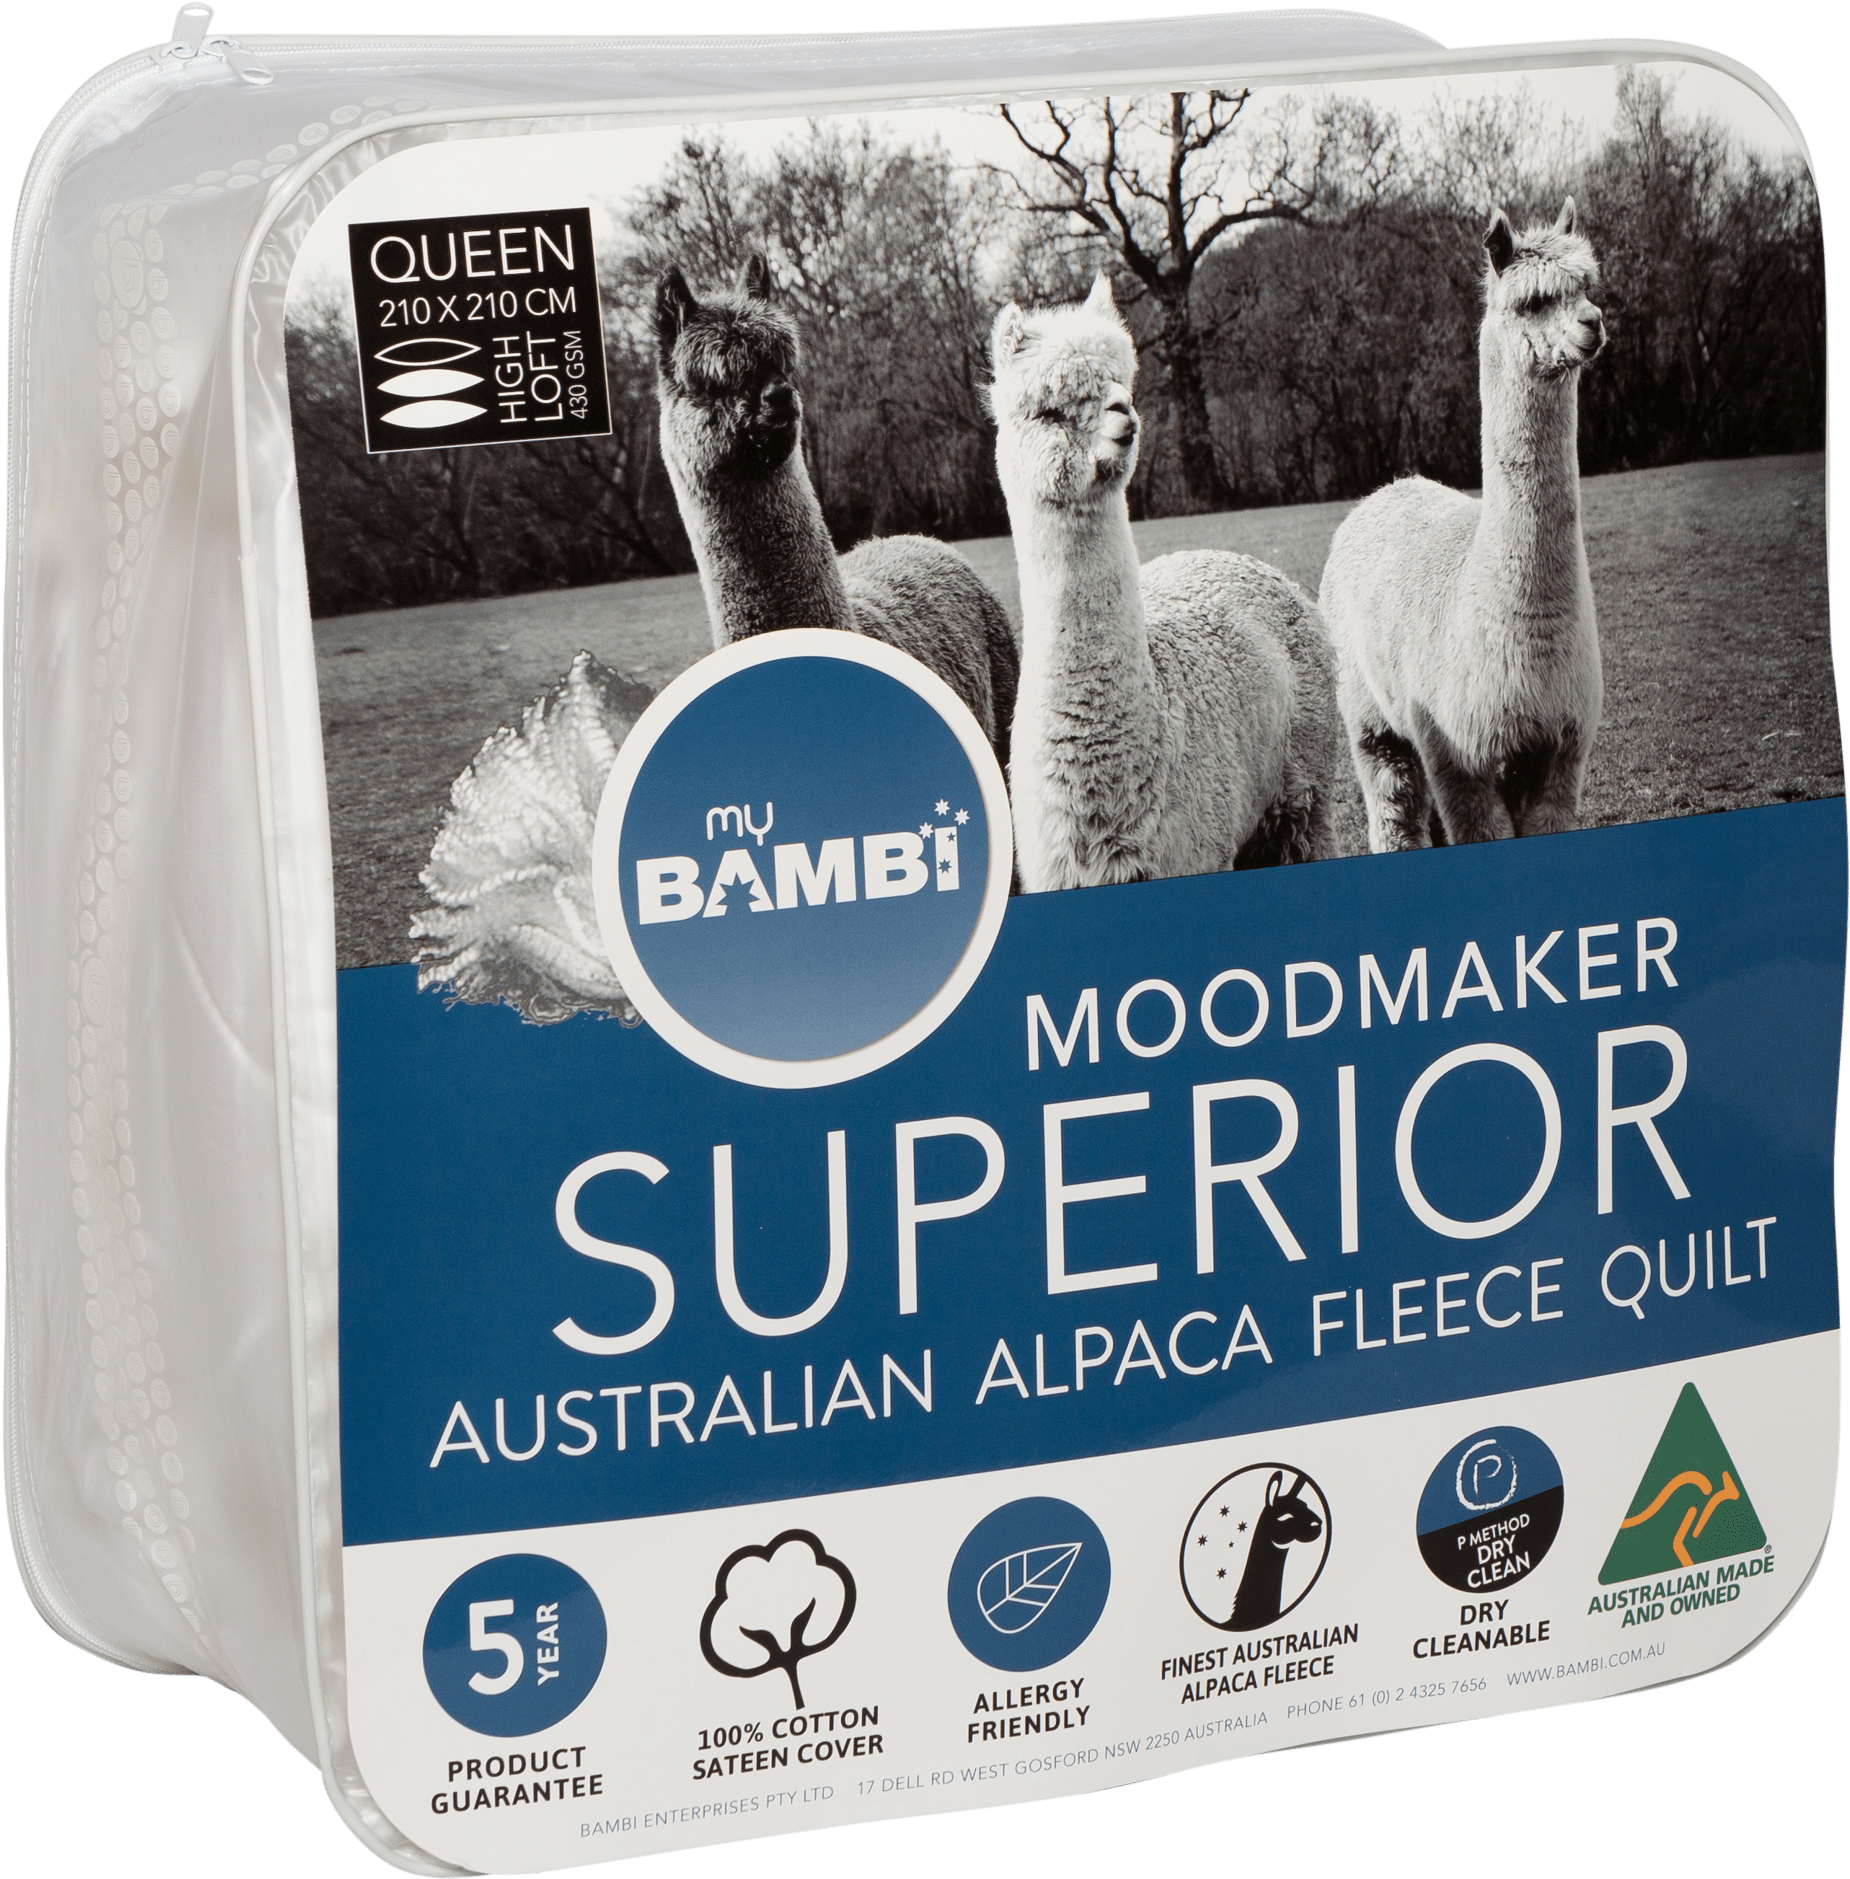 Australian Alpaca Fleece Quilt Packaging PNG